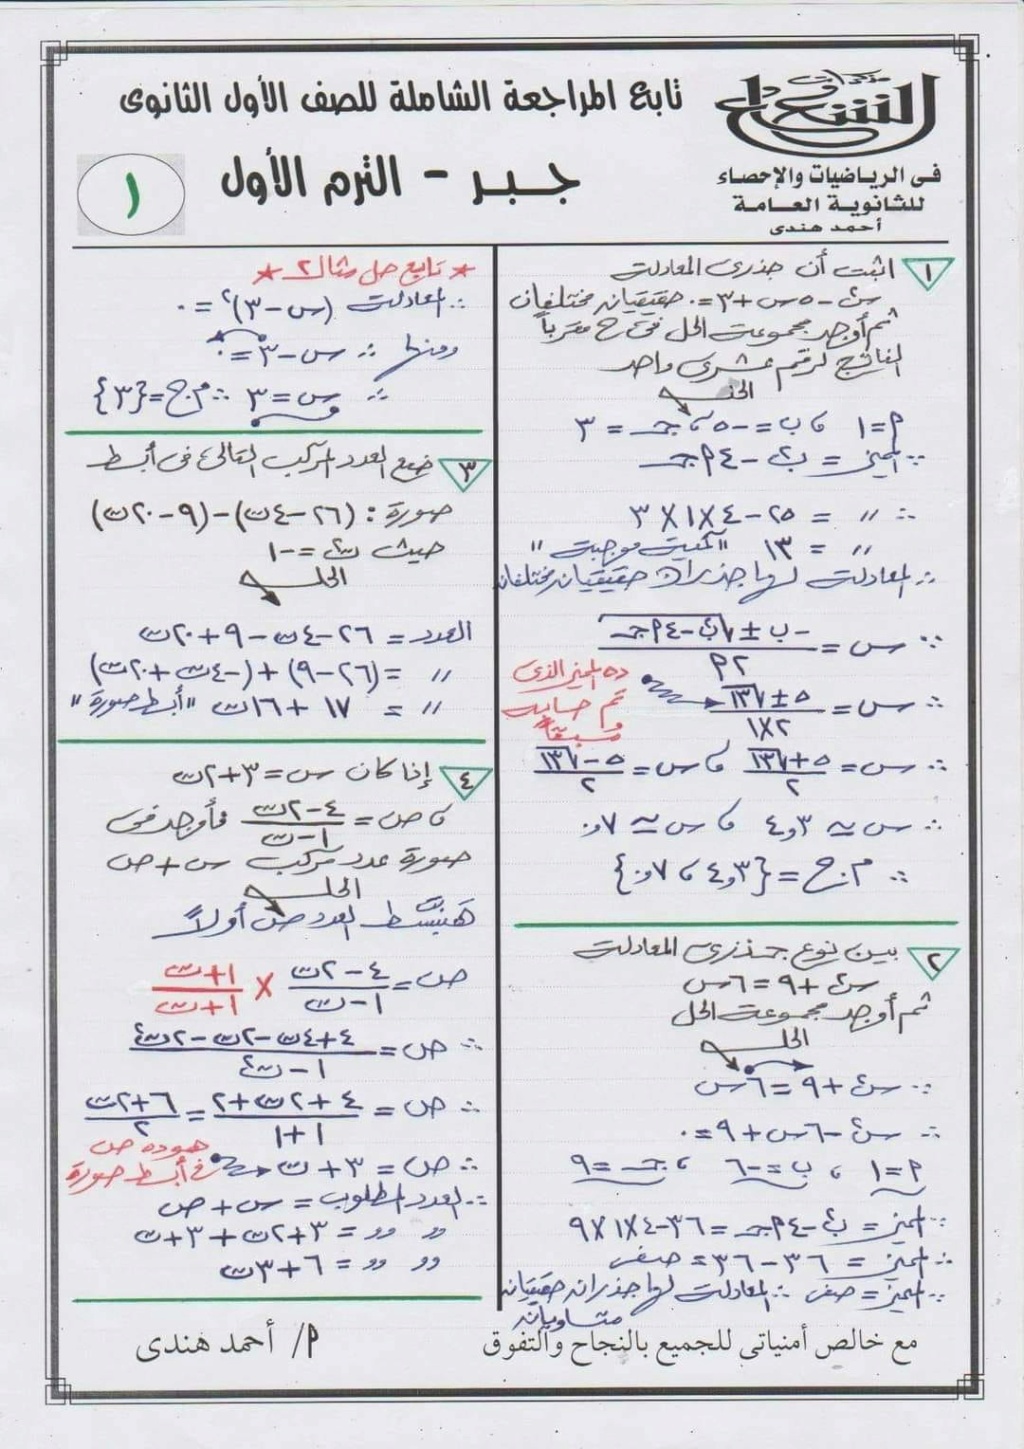 بوكليت مراجعة الرياضيات أولى ثانوي PDF أ. محمود حرة أ. أحمد هندي 1863